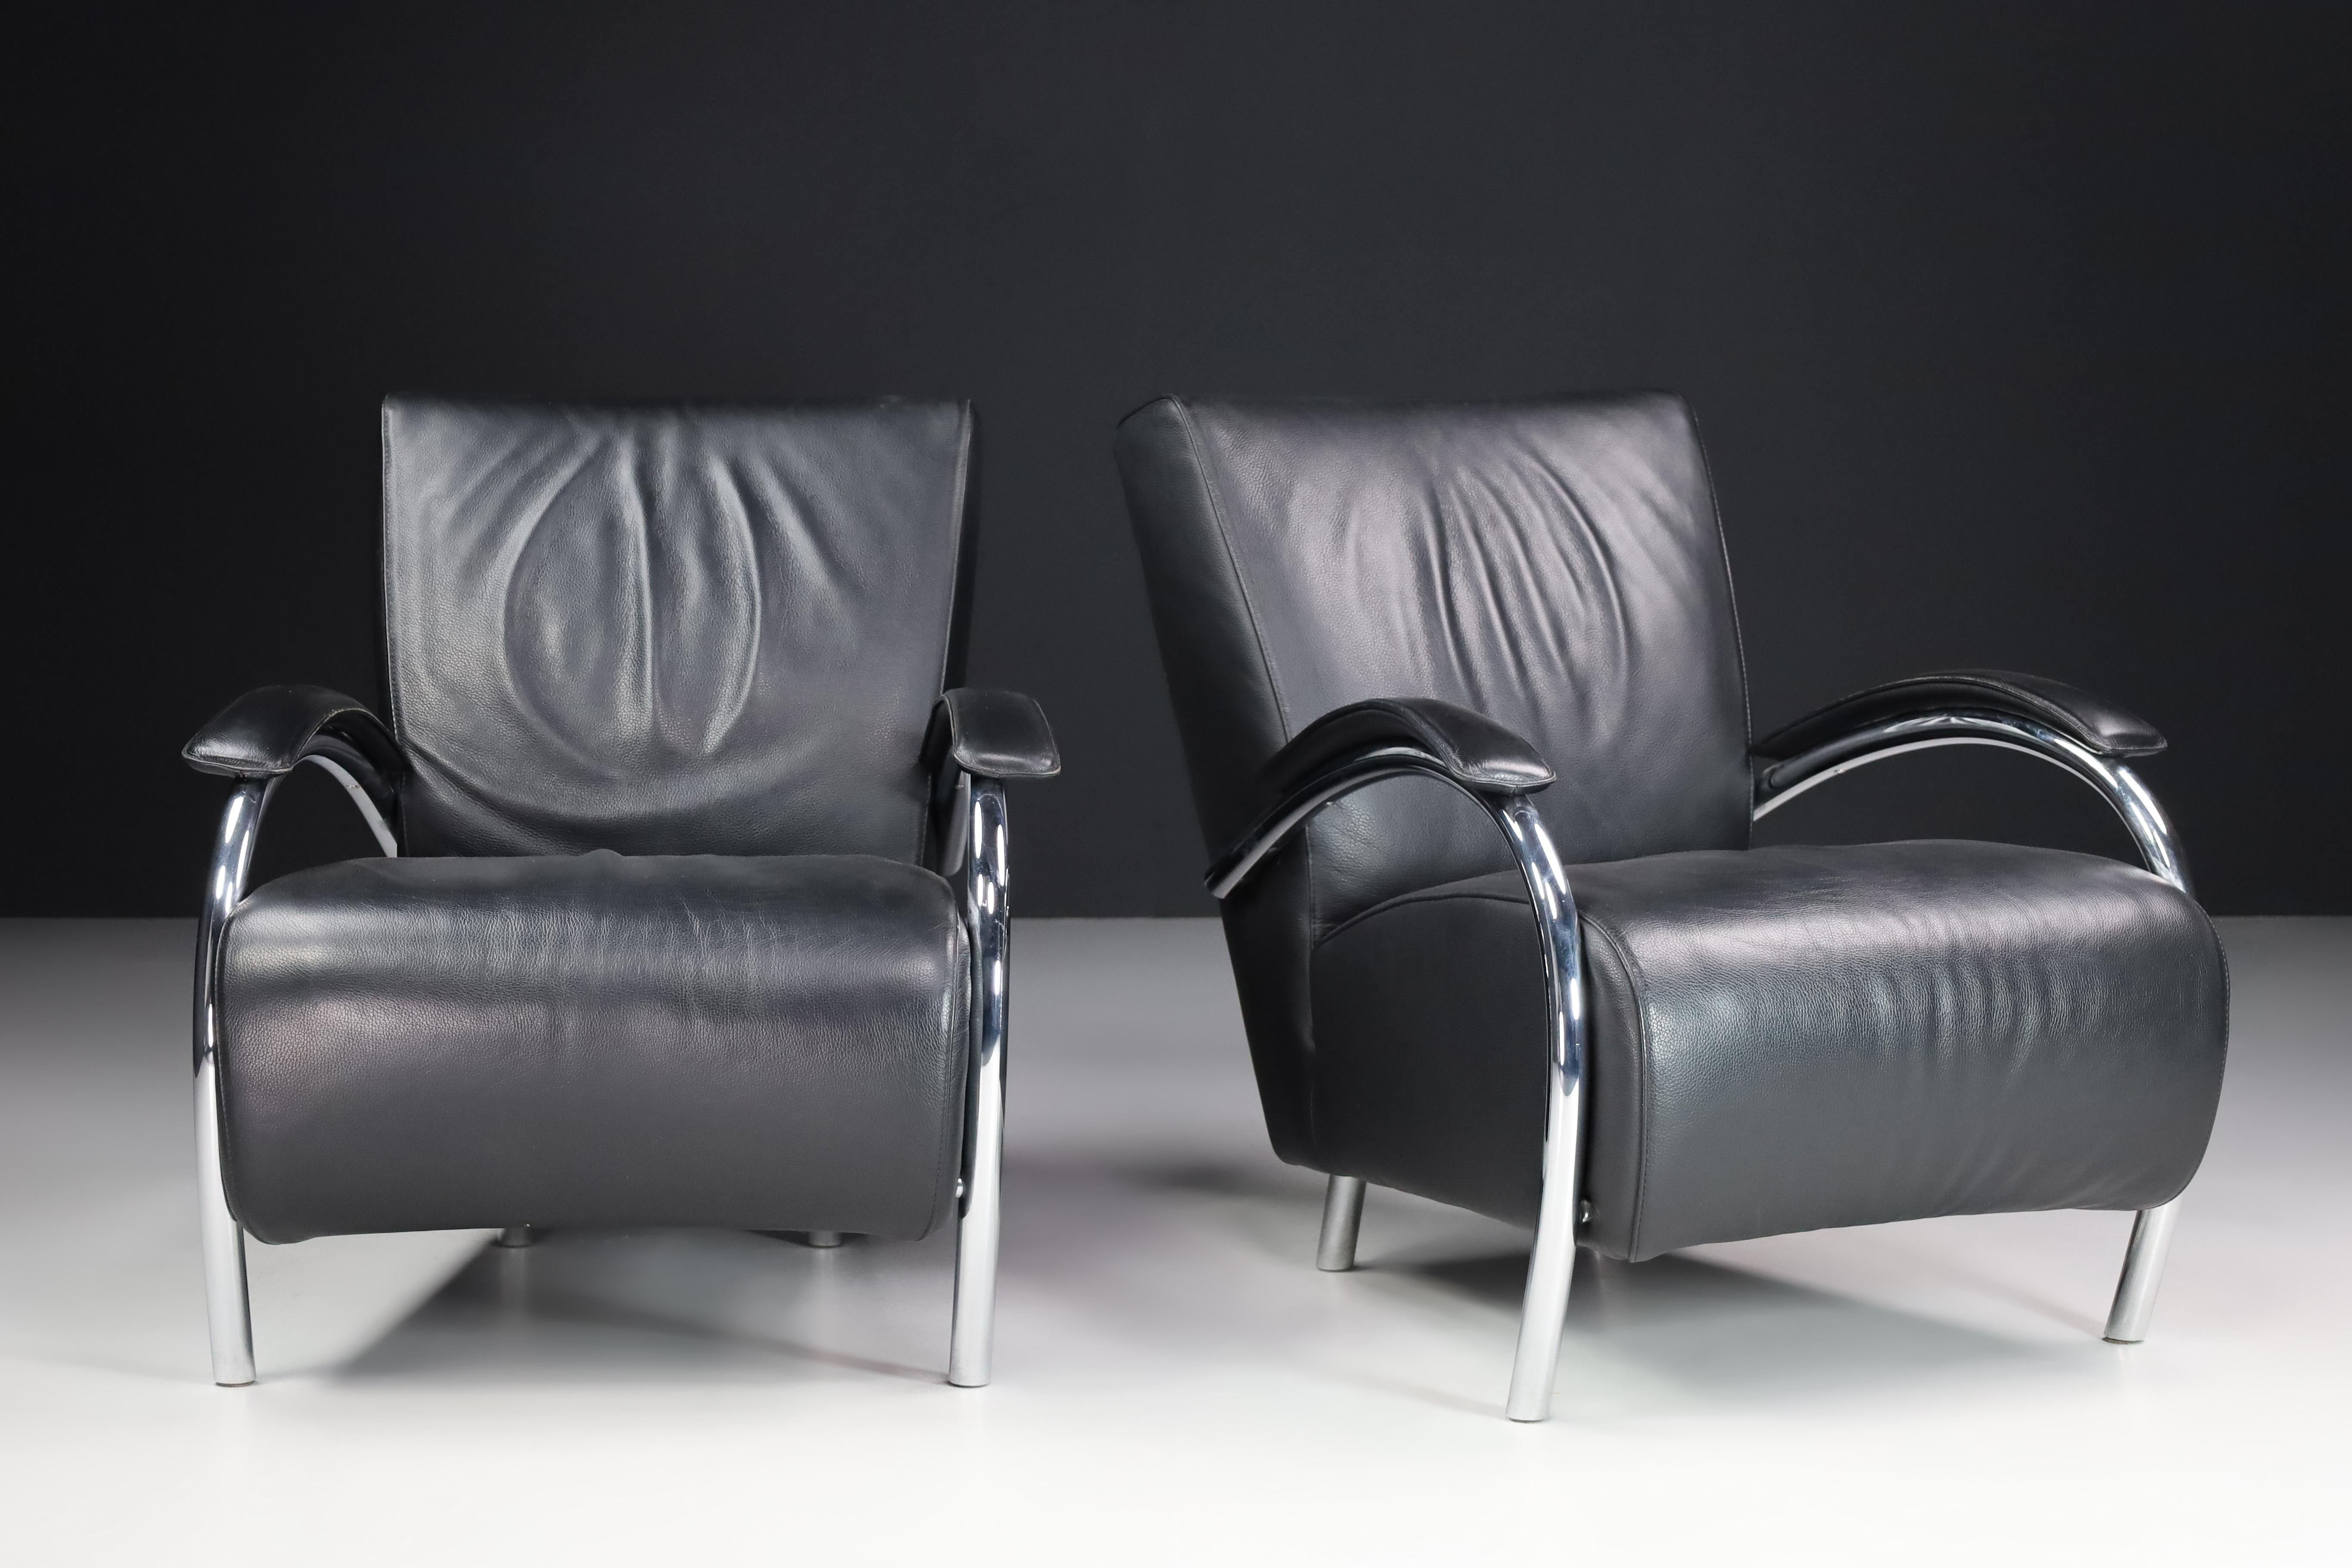 Lounge-Sessel aus Leder und Chrom für Molinari, Italien 1980er

Diese Sessel wurden in den 80er Jahren von dem italienischen Möbelhersteller Molinari entworfen und produziert, der für seine handgefertigten Qualitätsmöbel bekannt ist. Die Sessel sind